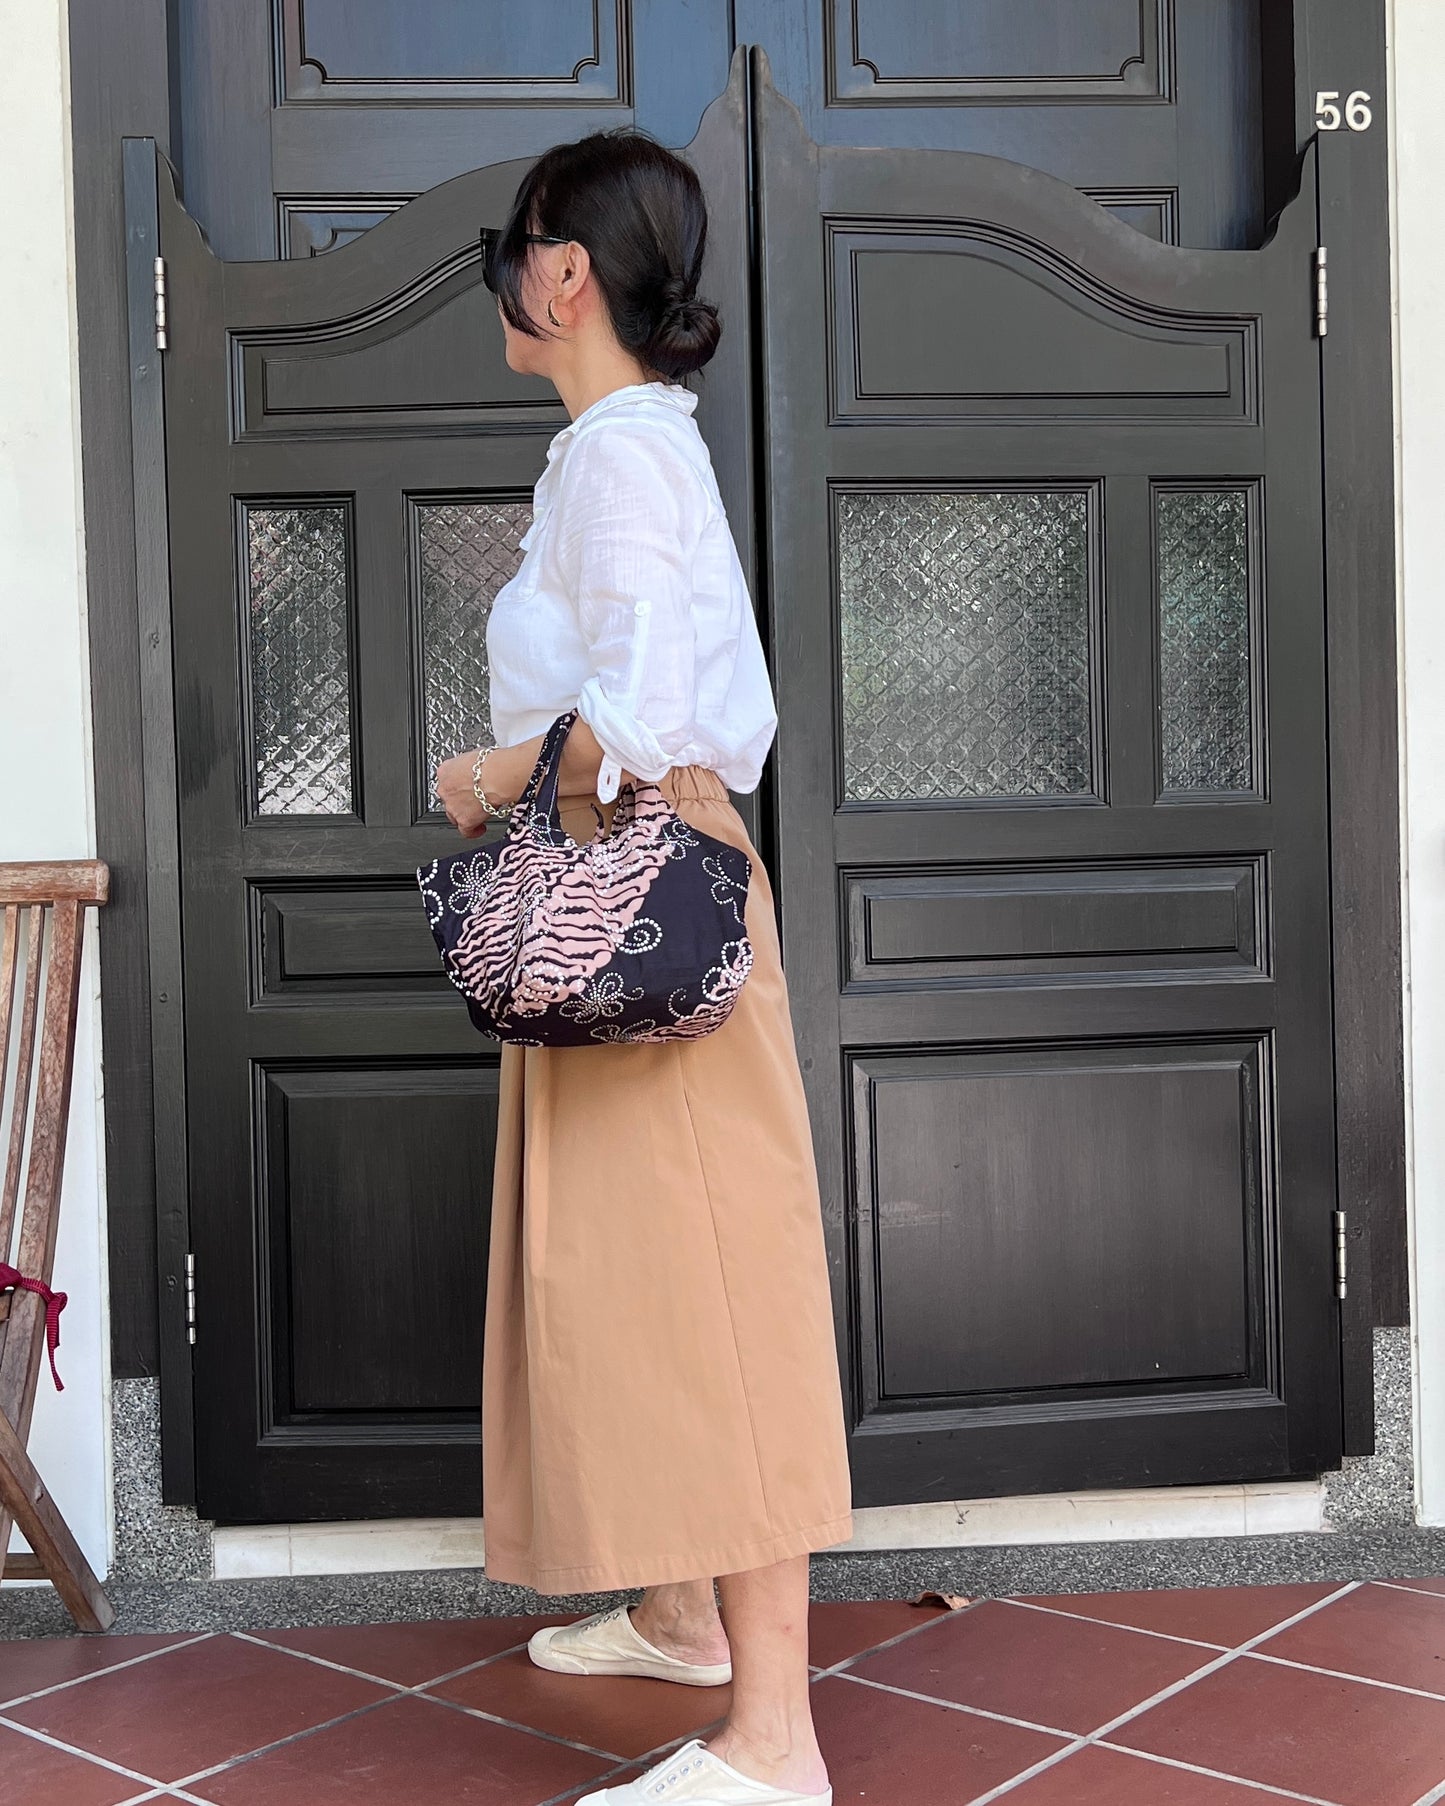 Joy Cotton Batik Bag - Black Brown Floral